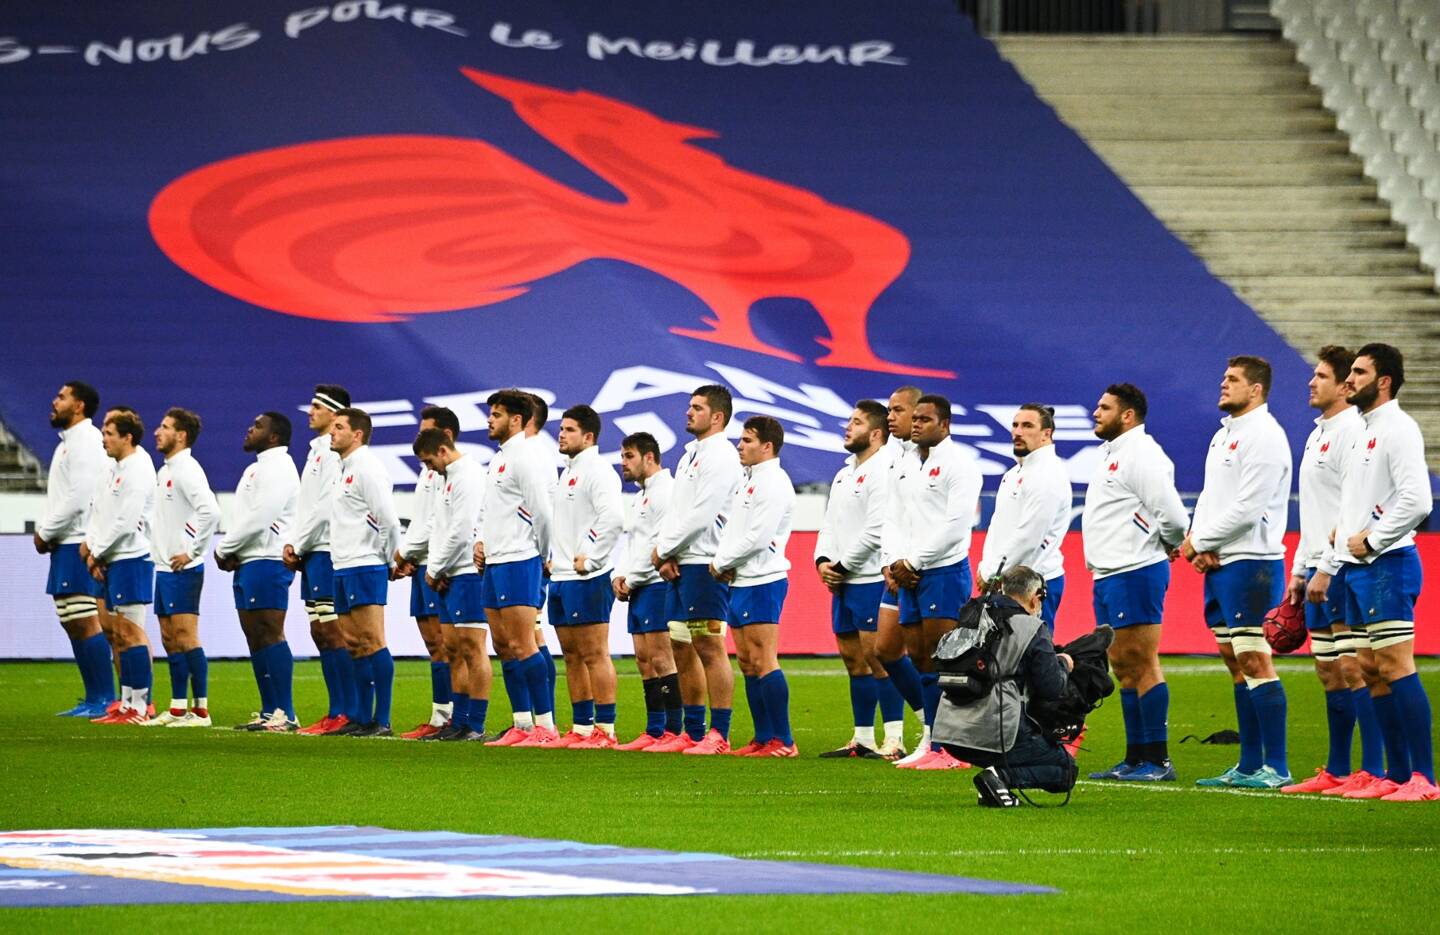 L'Équipe de France de rugby prend la 5e place du classement mondial.
